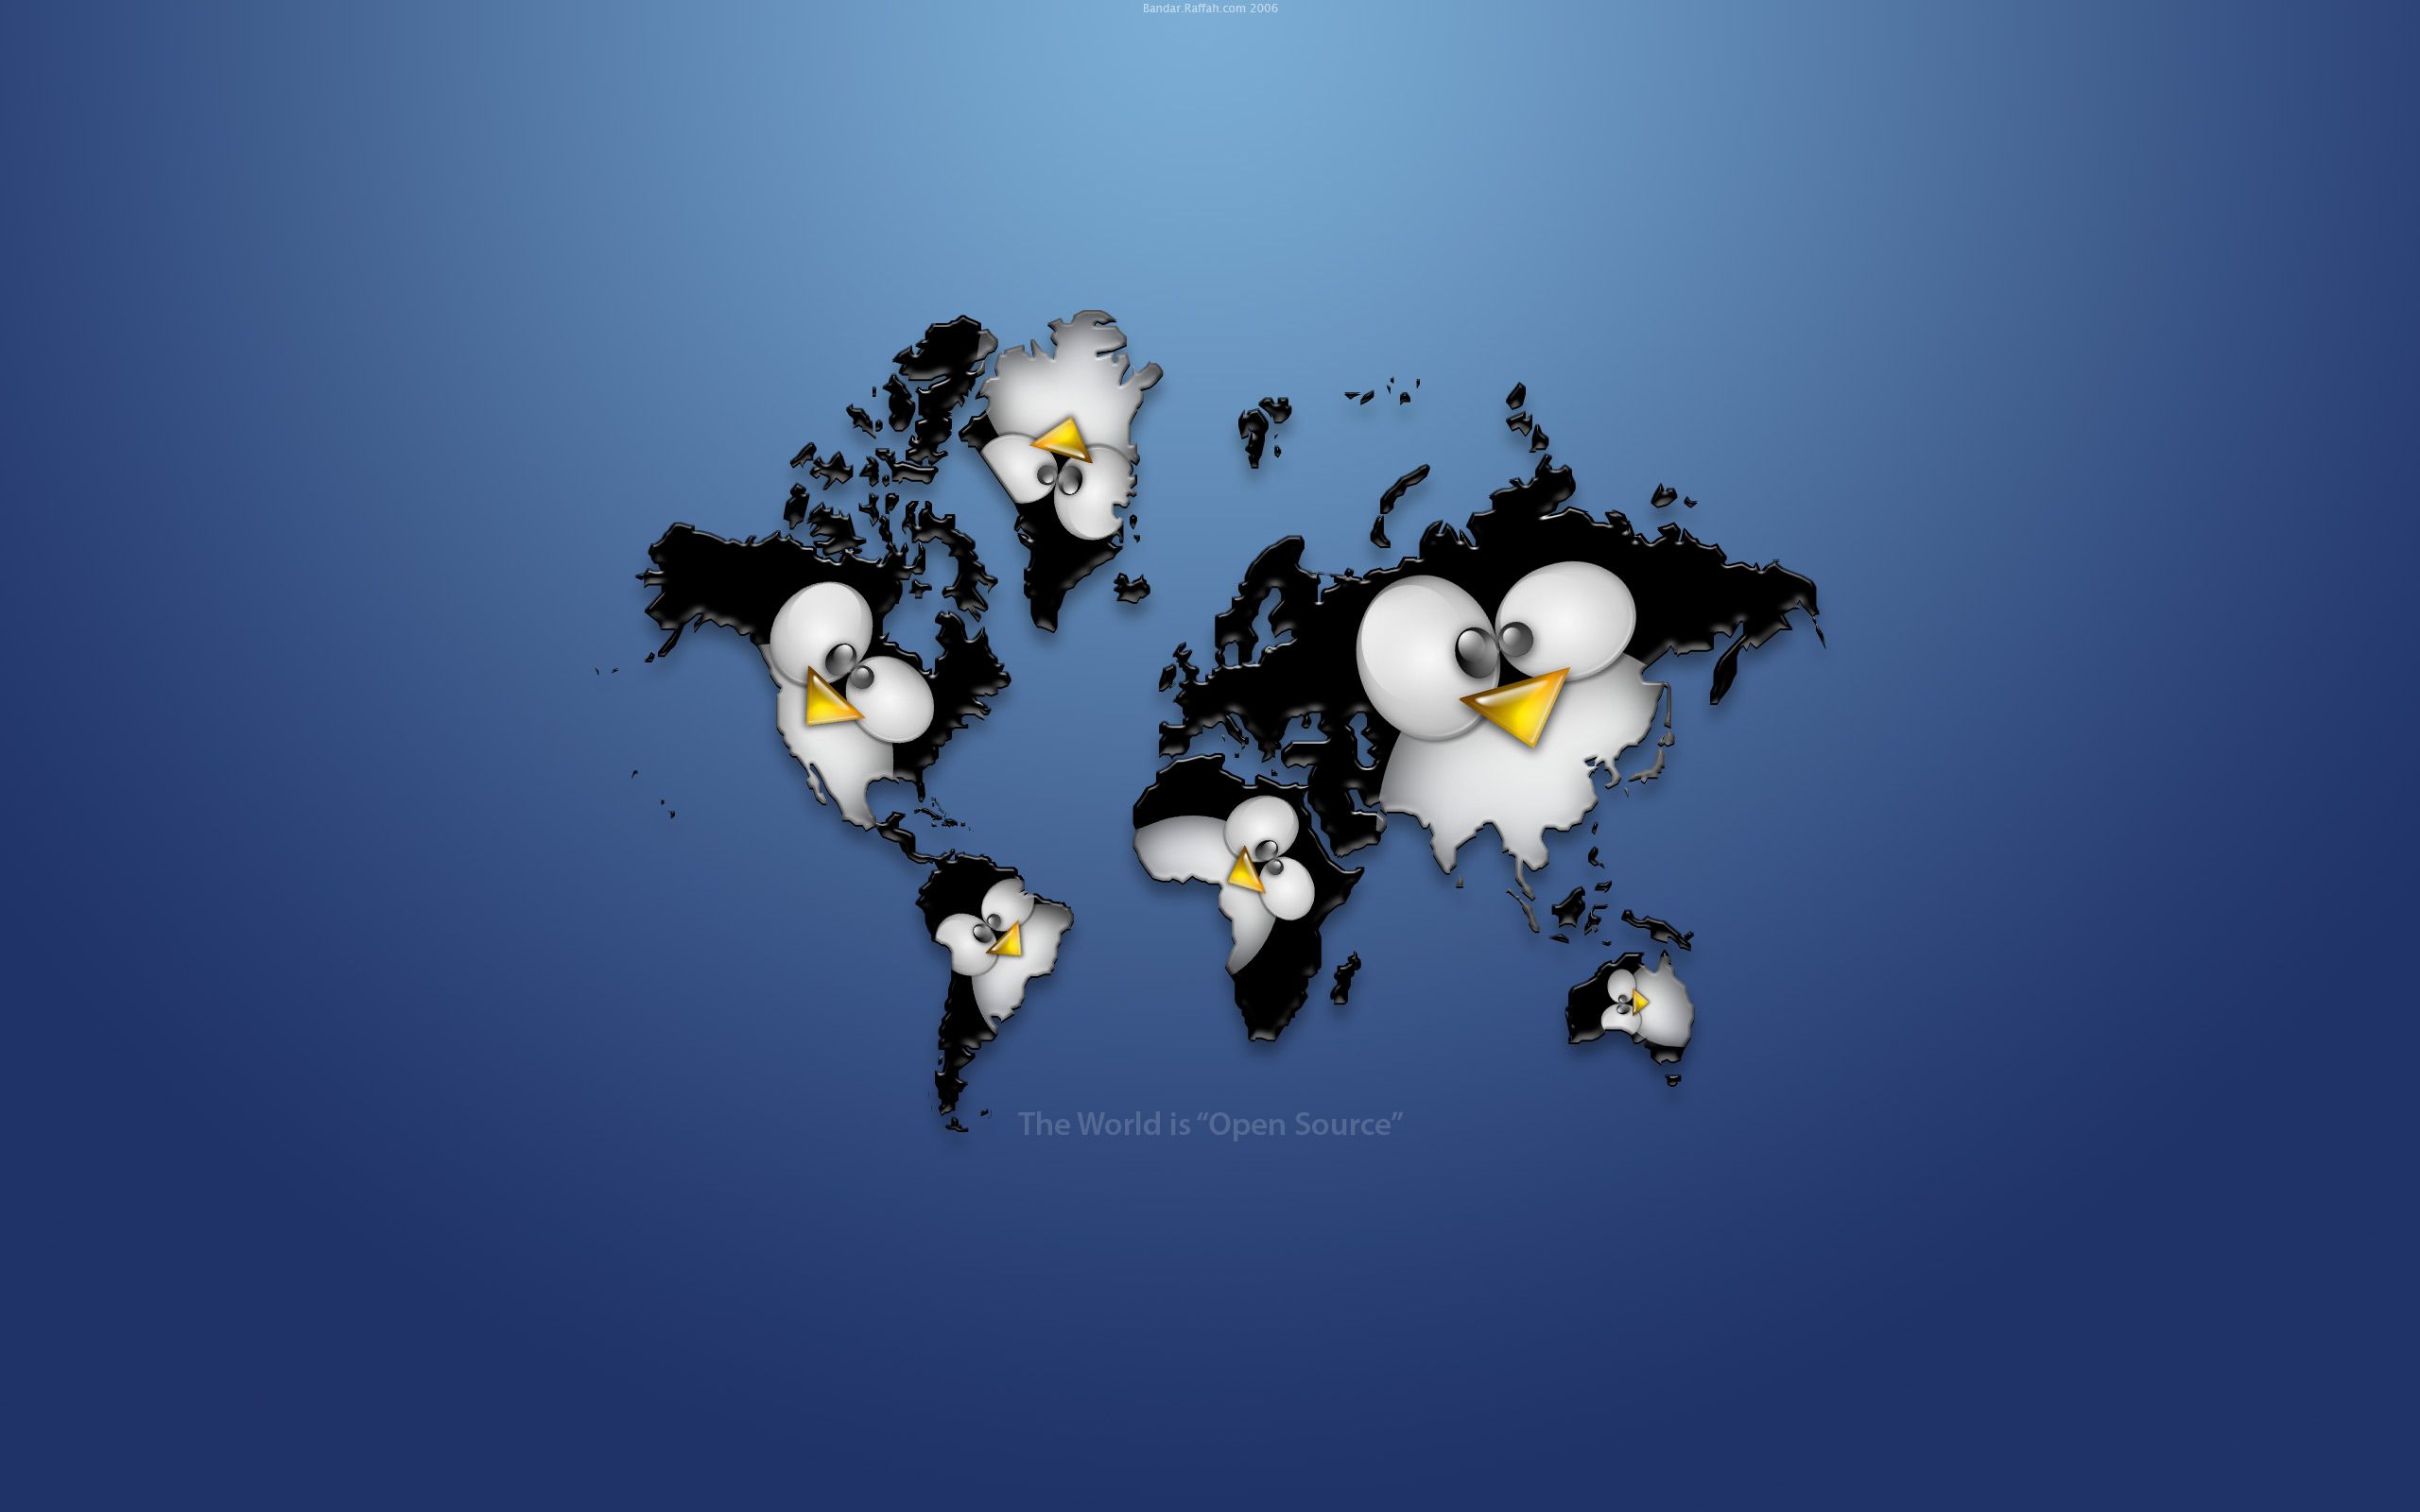 Open Source World wallpaper. Open Source World